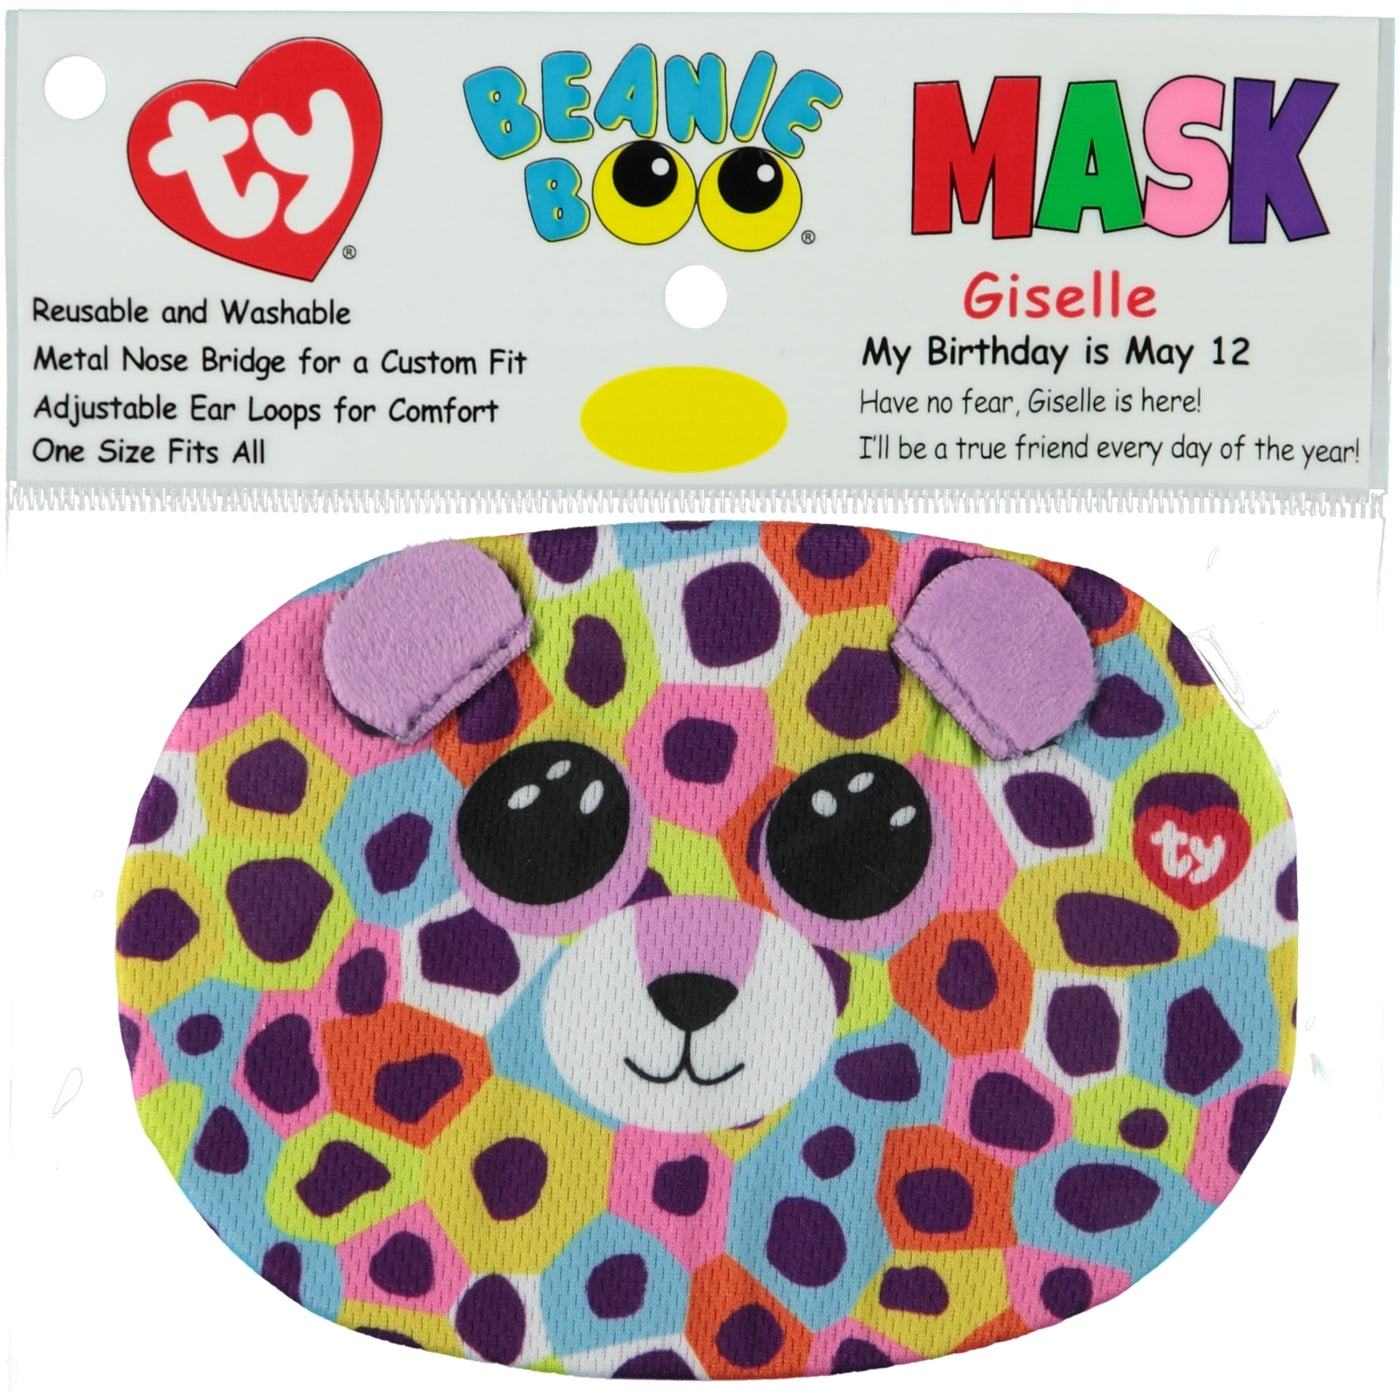 TY Beanie Boos Face Mask Giselle Leopard - stylecreep.com